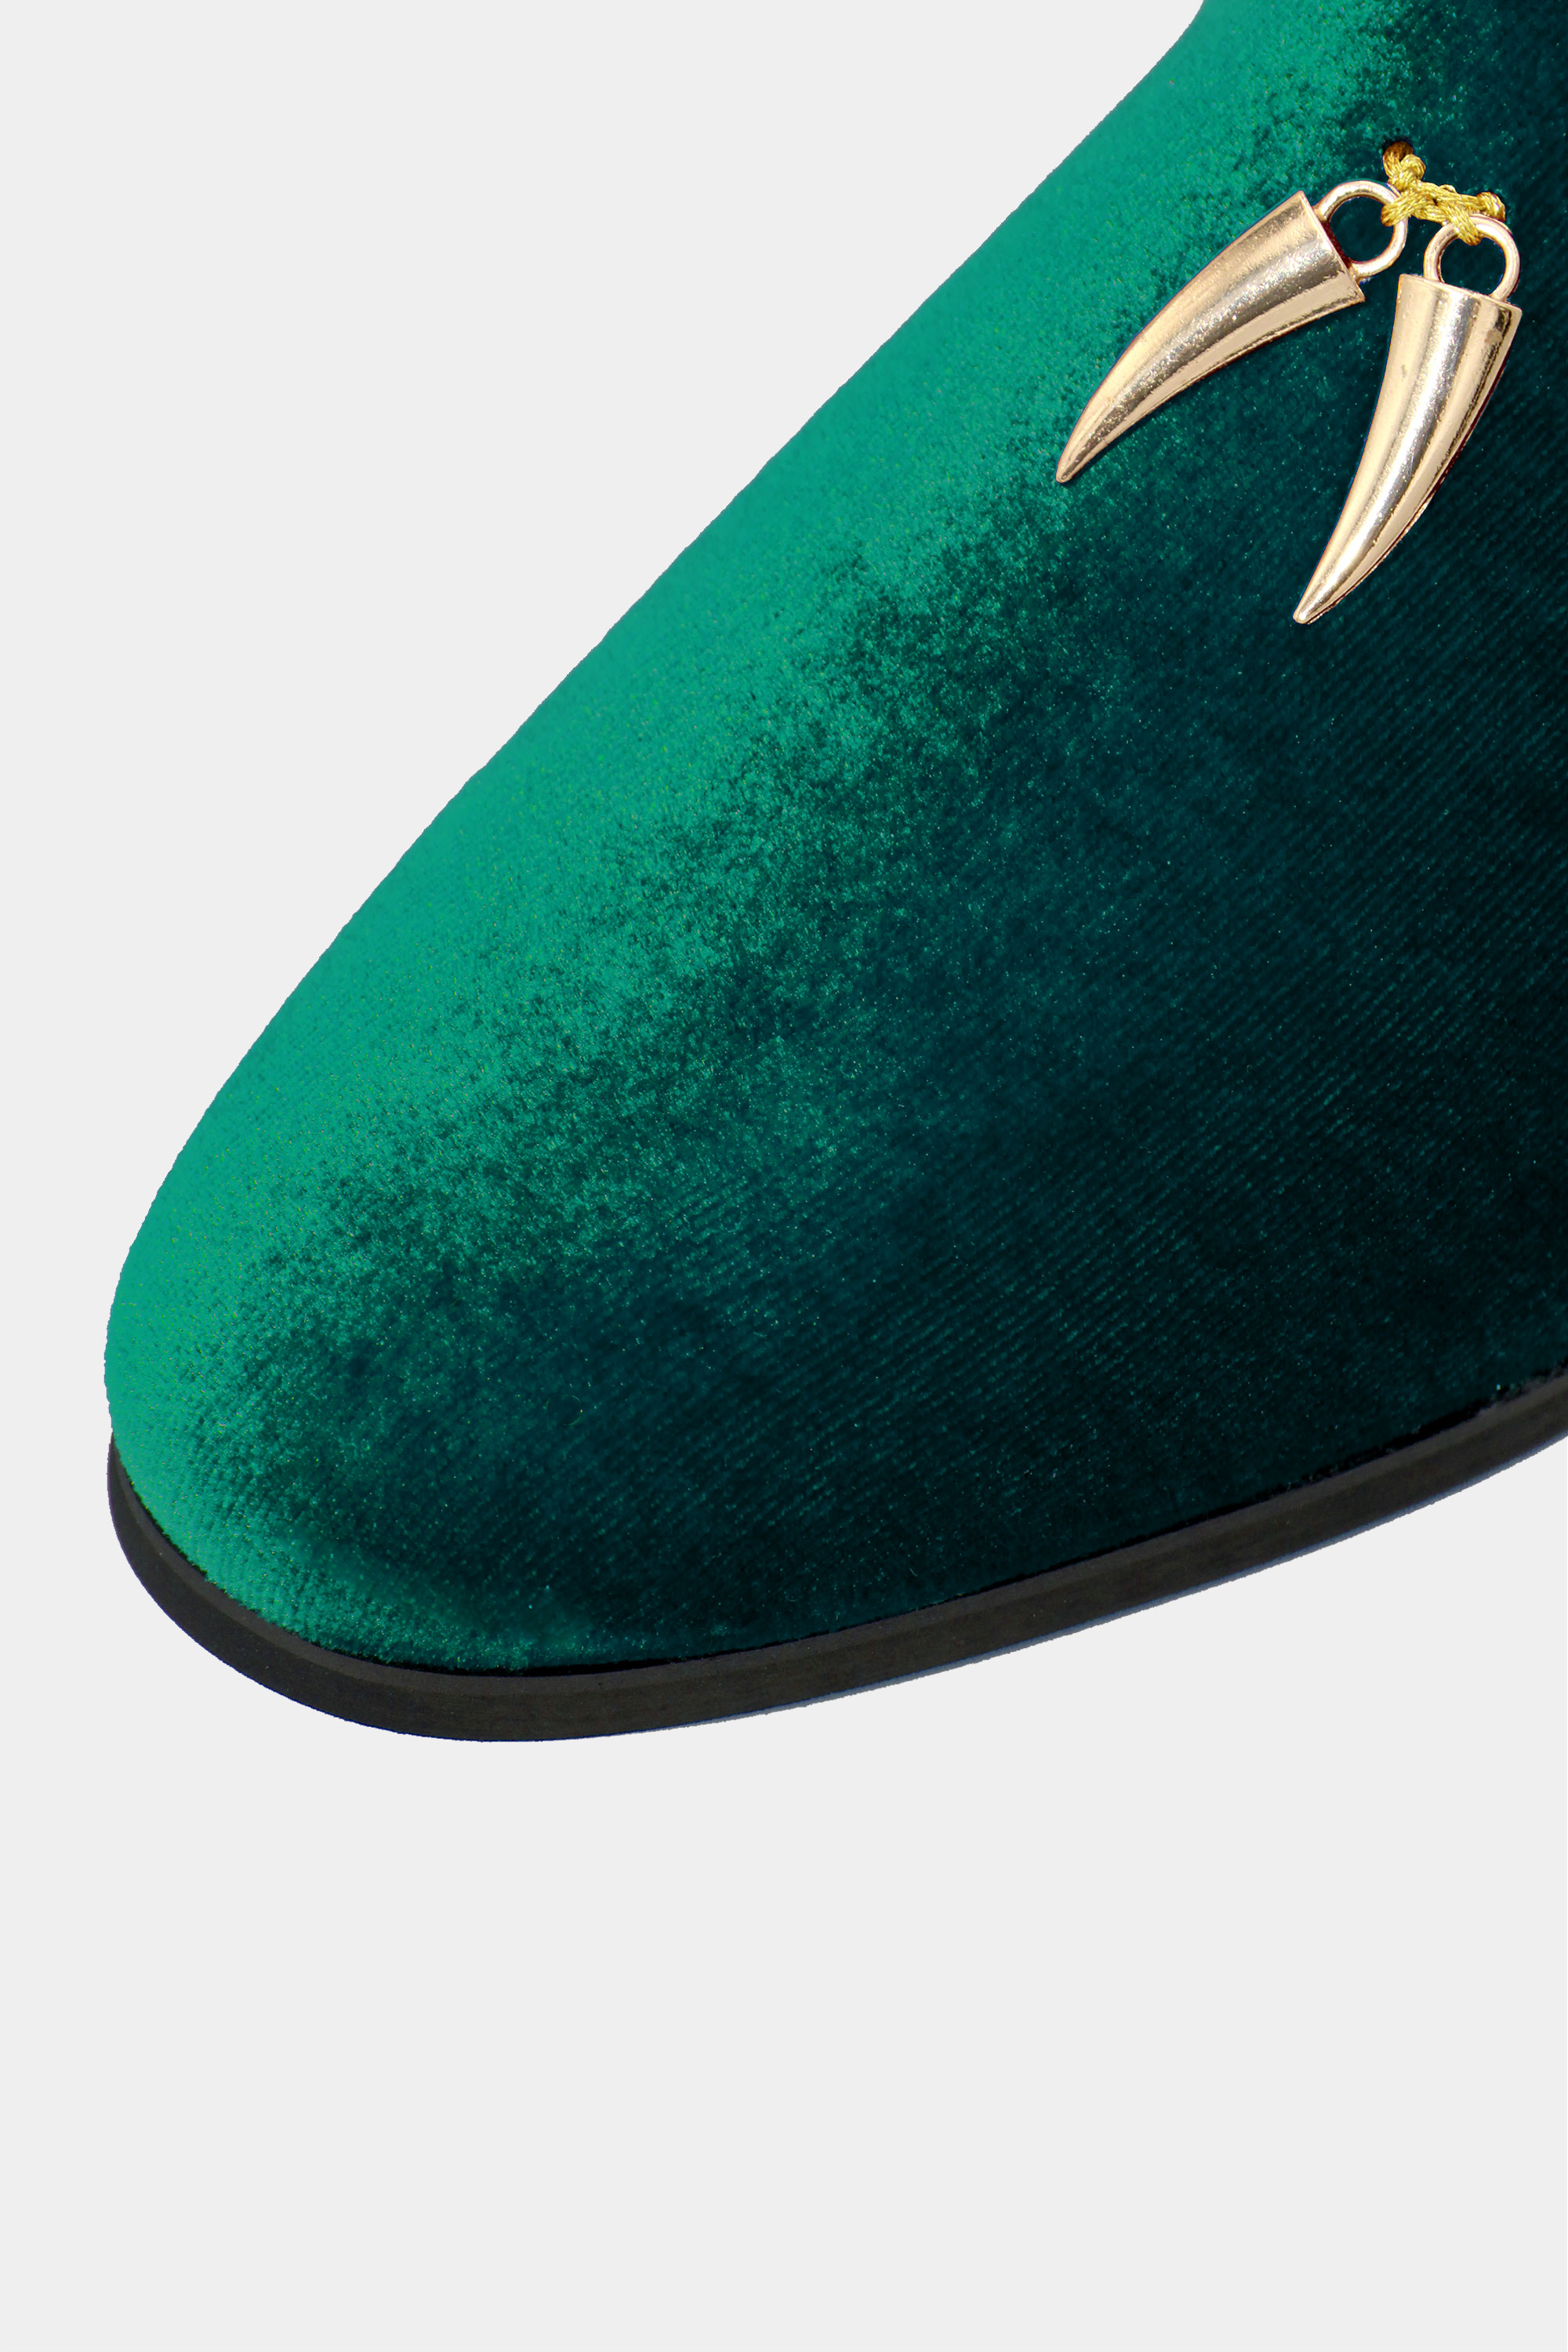 Green-Suede-Loafer-Shoes-from-Gentlemansguru.com